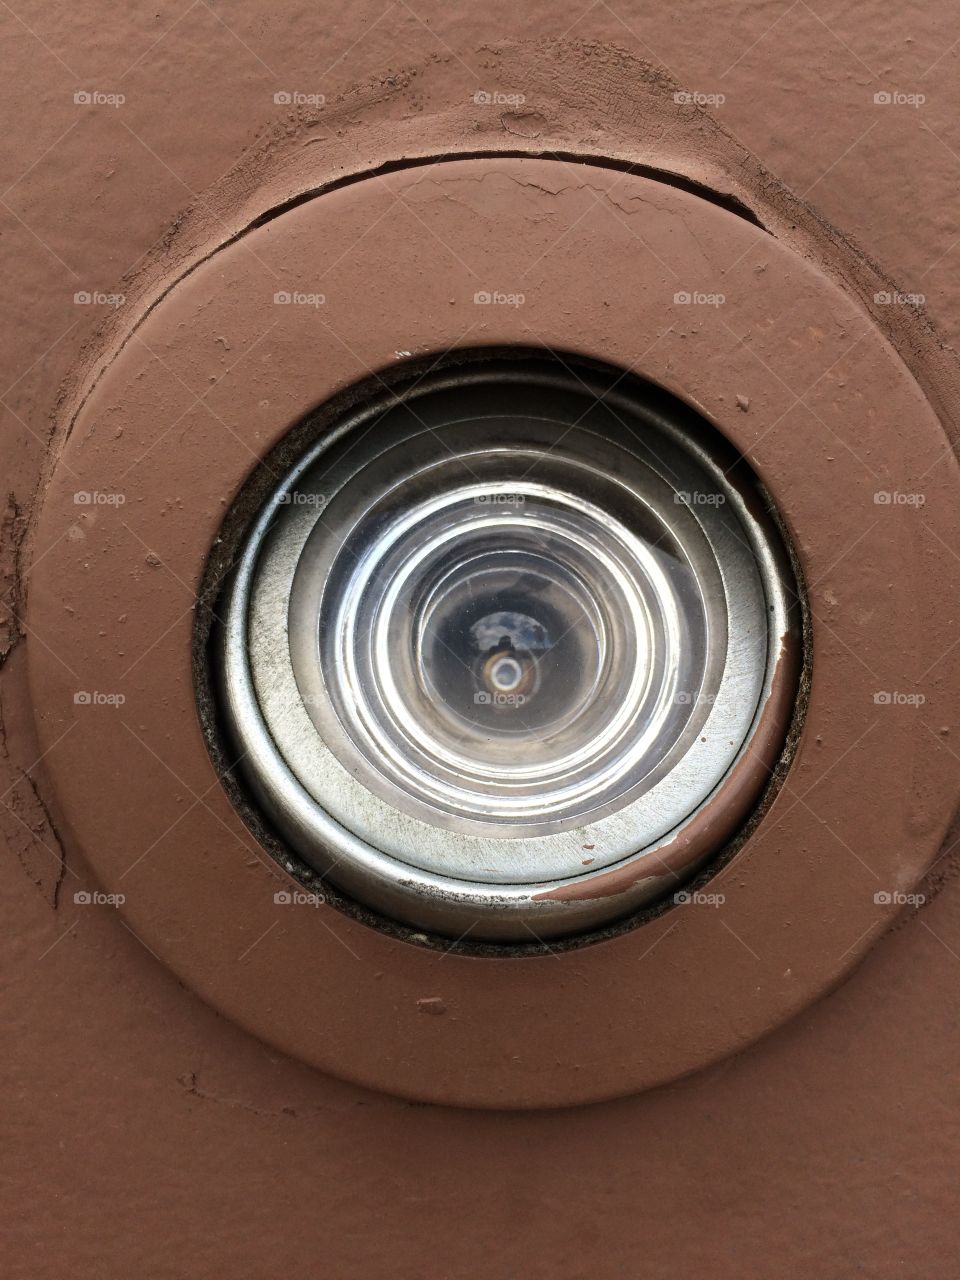 A peephole in a door taken straight on